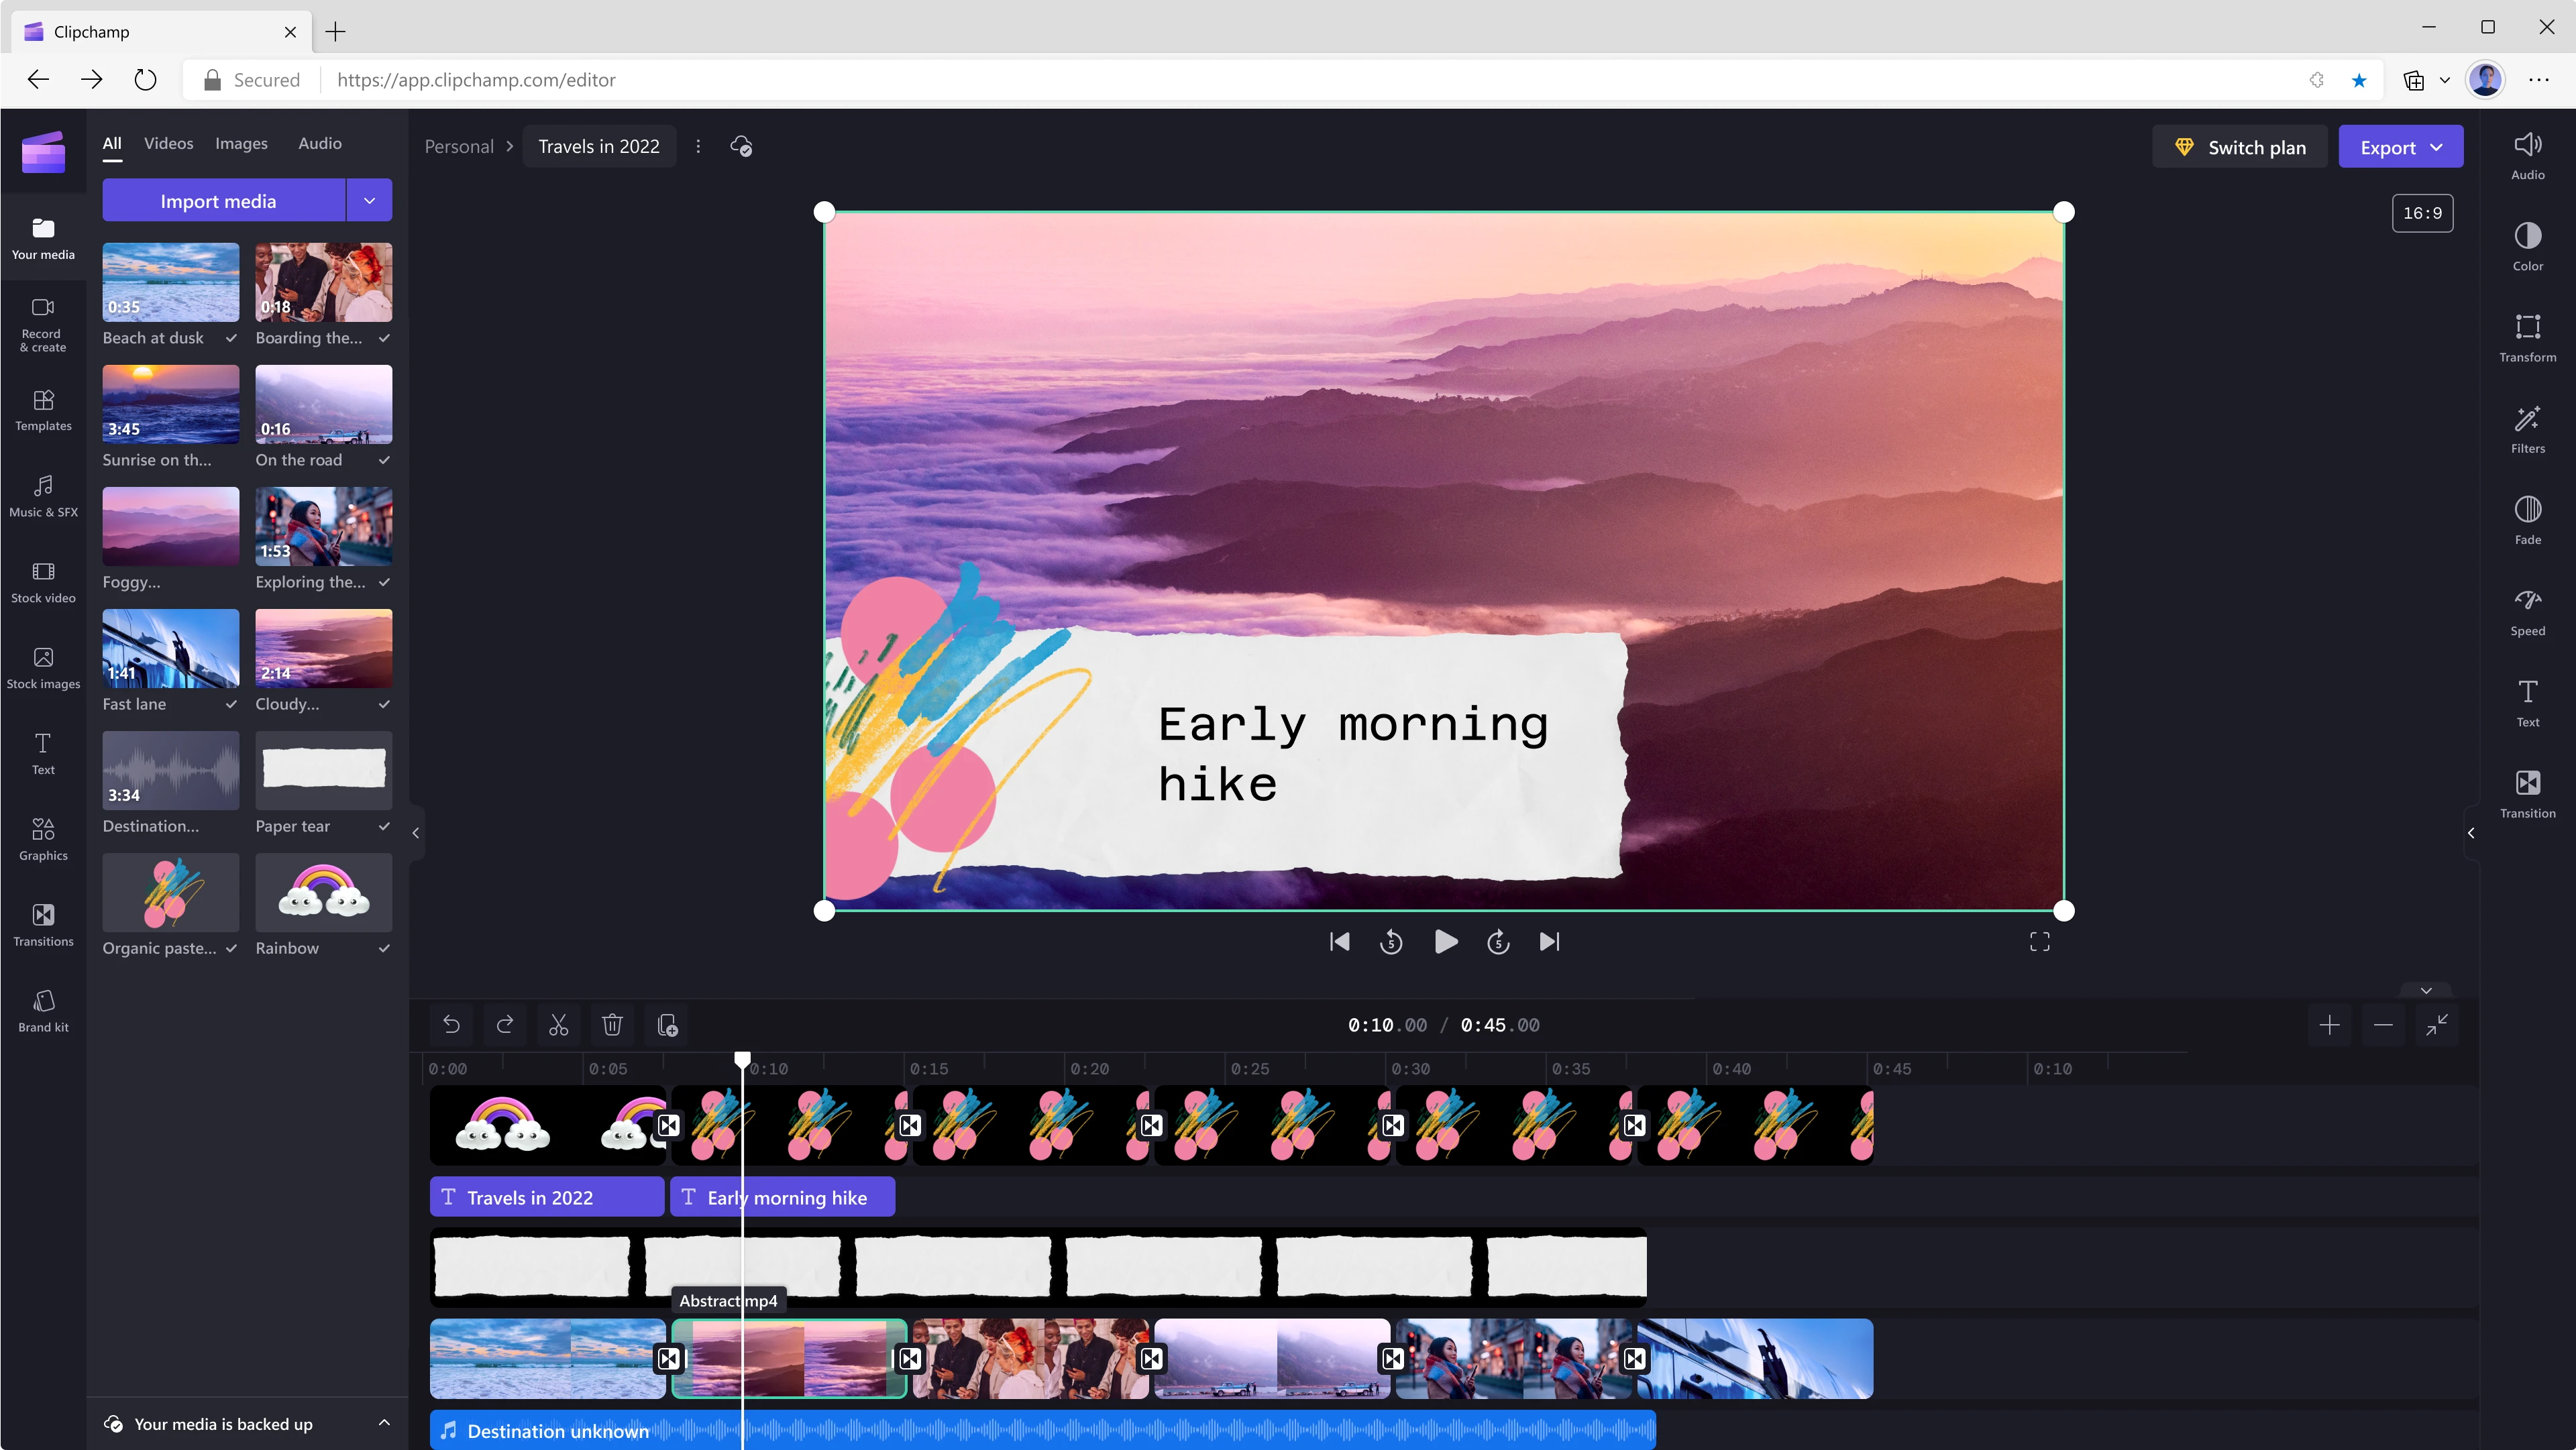 En bruger redigerer en 45 sekunders video med Clipchamp. Billedet ved 10 sek. viser bjerge og skyer i en lilla farve med en tekstoverlejring med ordene 